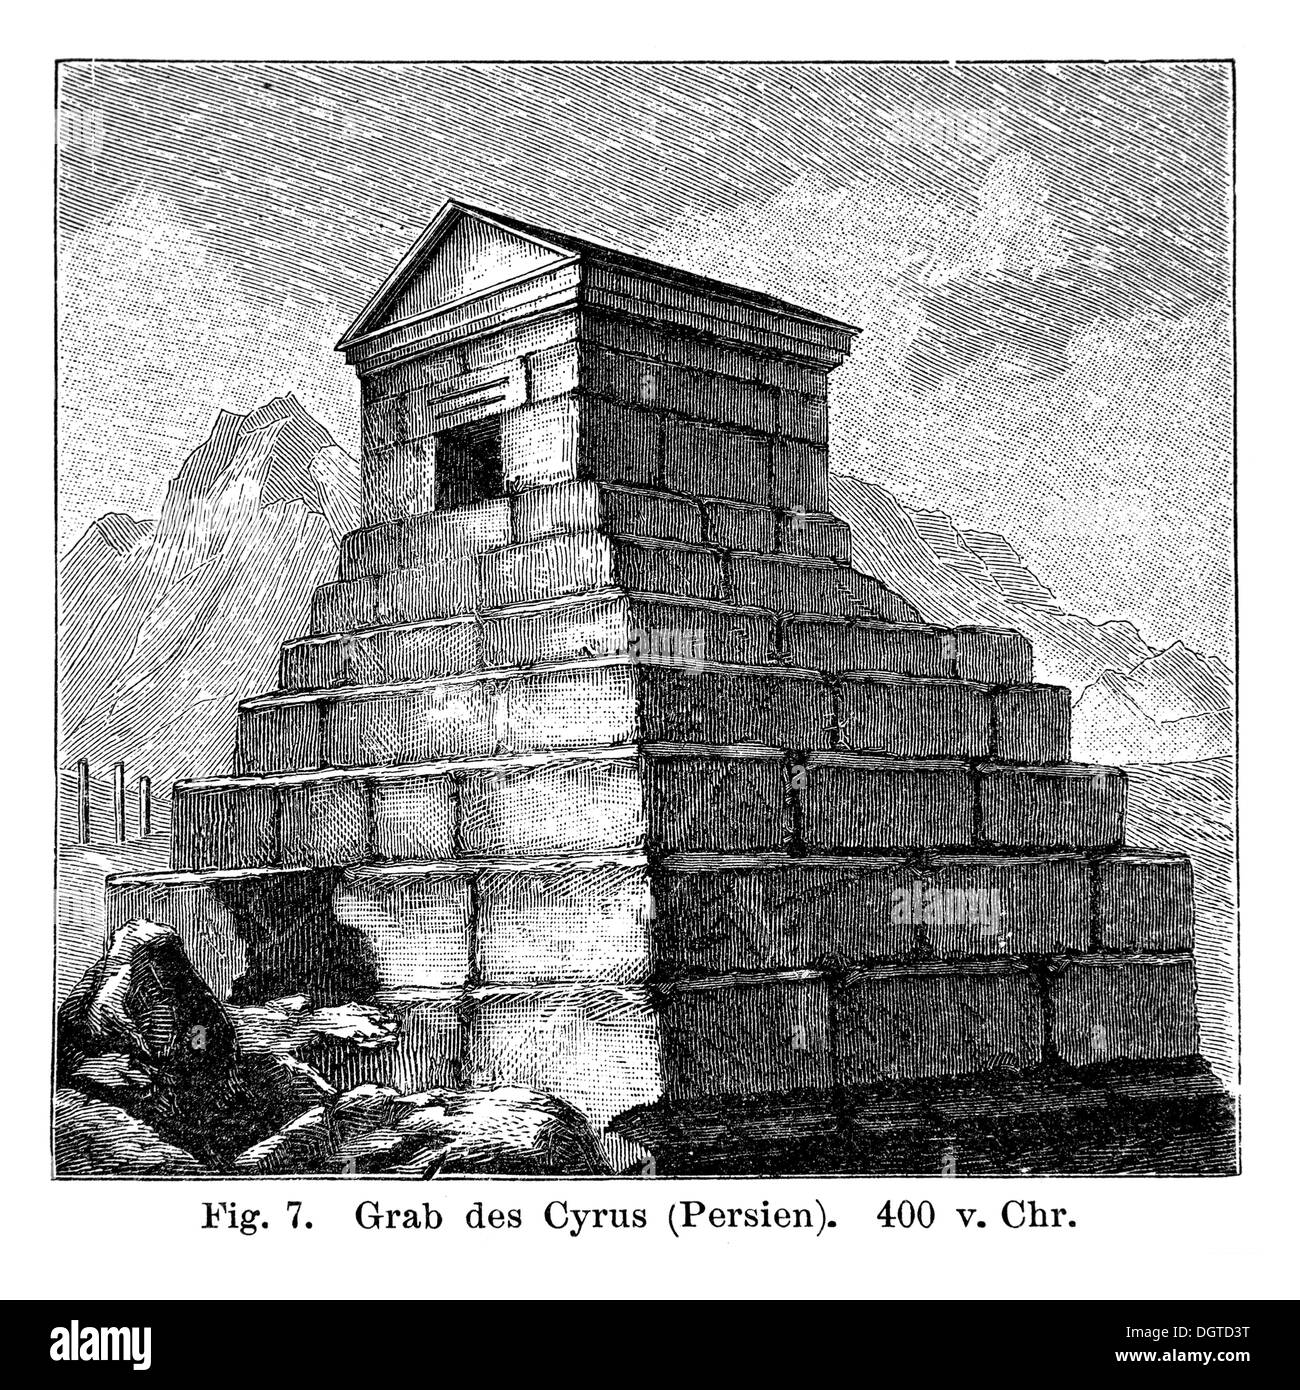 Mausoleum von Cyrus, Persien, 400 v. Chr., Illustration, Meyers Konversations-Lexikon Enzyklopädie, 1897 Stockfoto